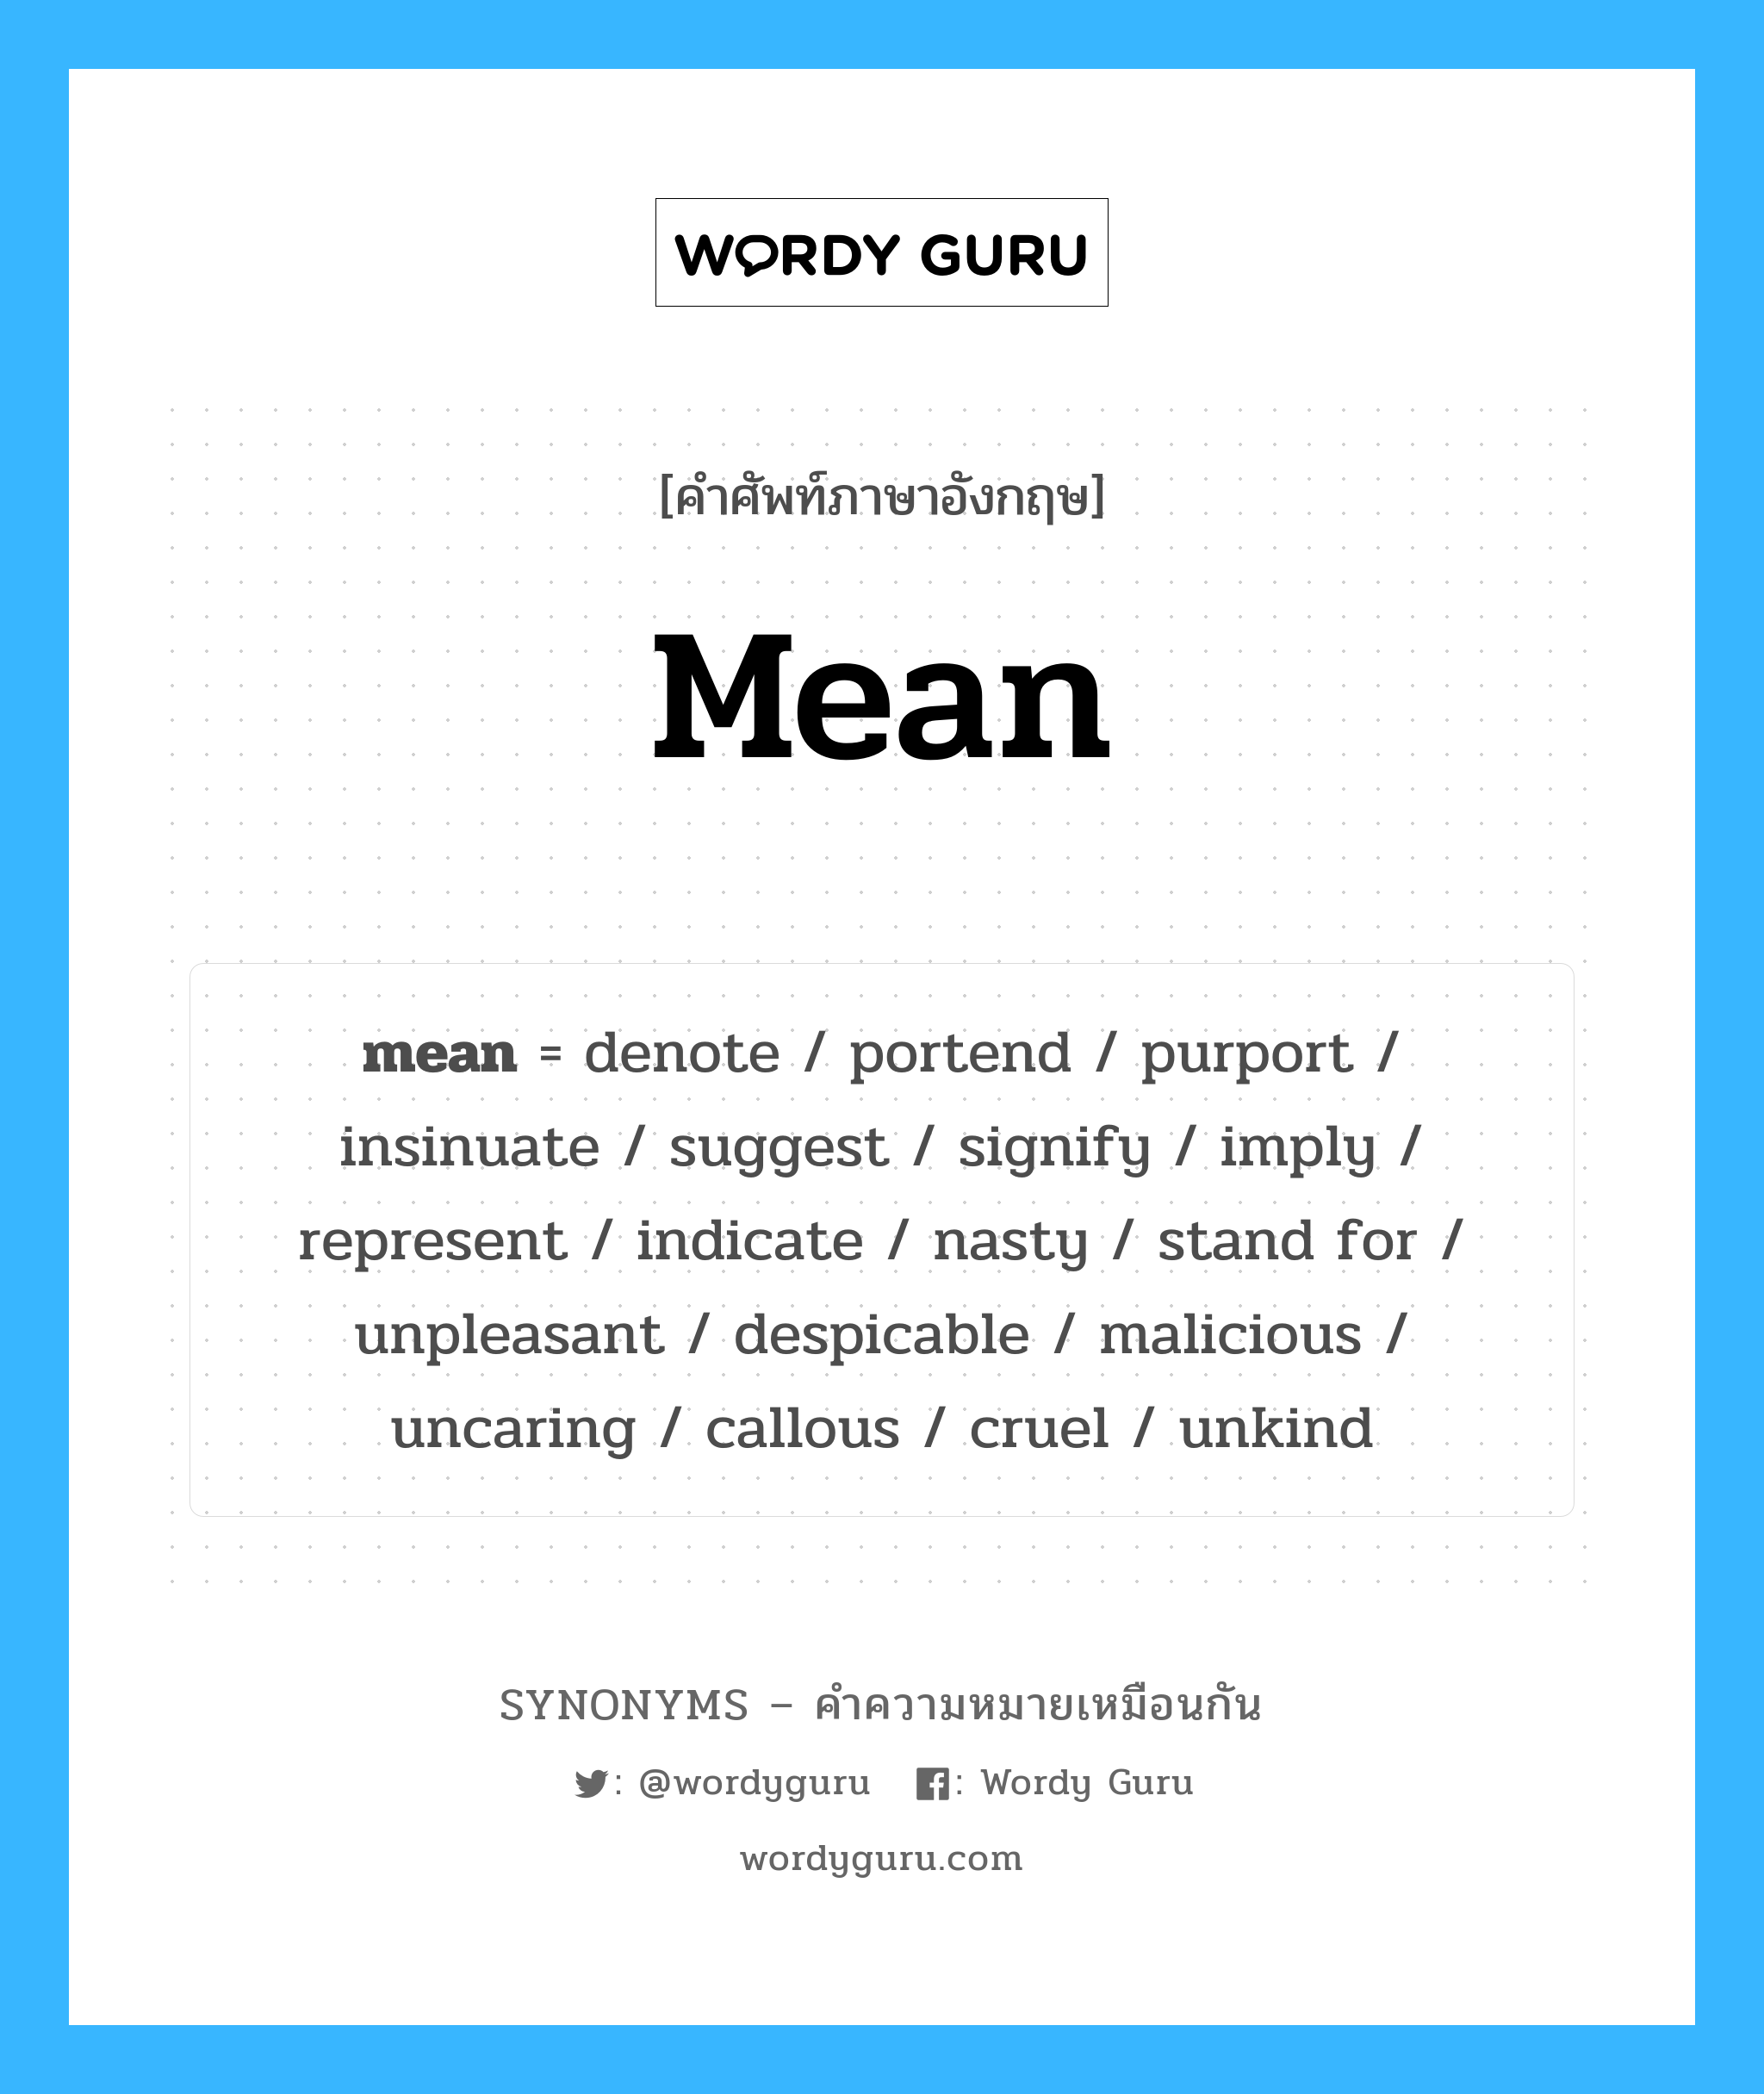 represent เป็นหนึ่งใน mean และมีคำอื่น ๆ อีกดังนี้, คำศัพท์ภาษาอังกฤษ represent ความหมายคล้ายกันกับ mean แปลว่า เป็นตัวแทน หมวด mean